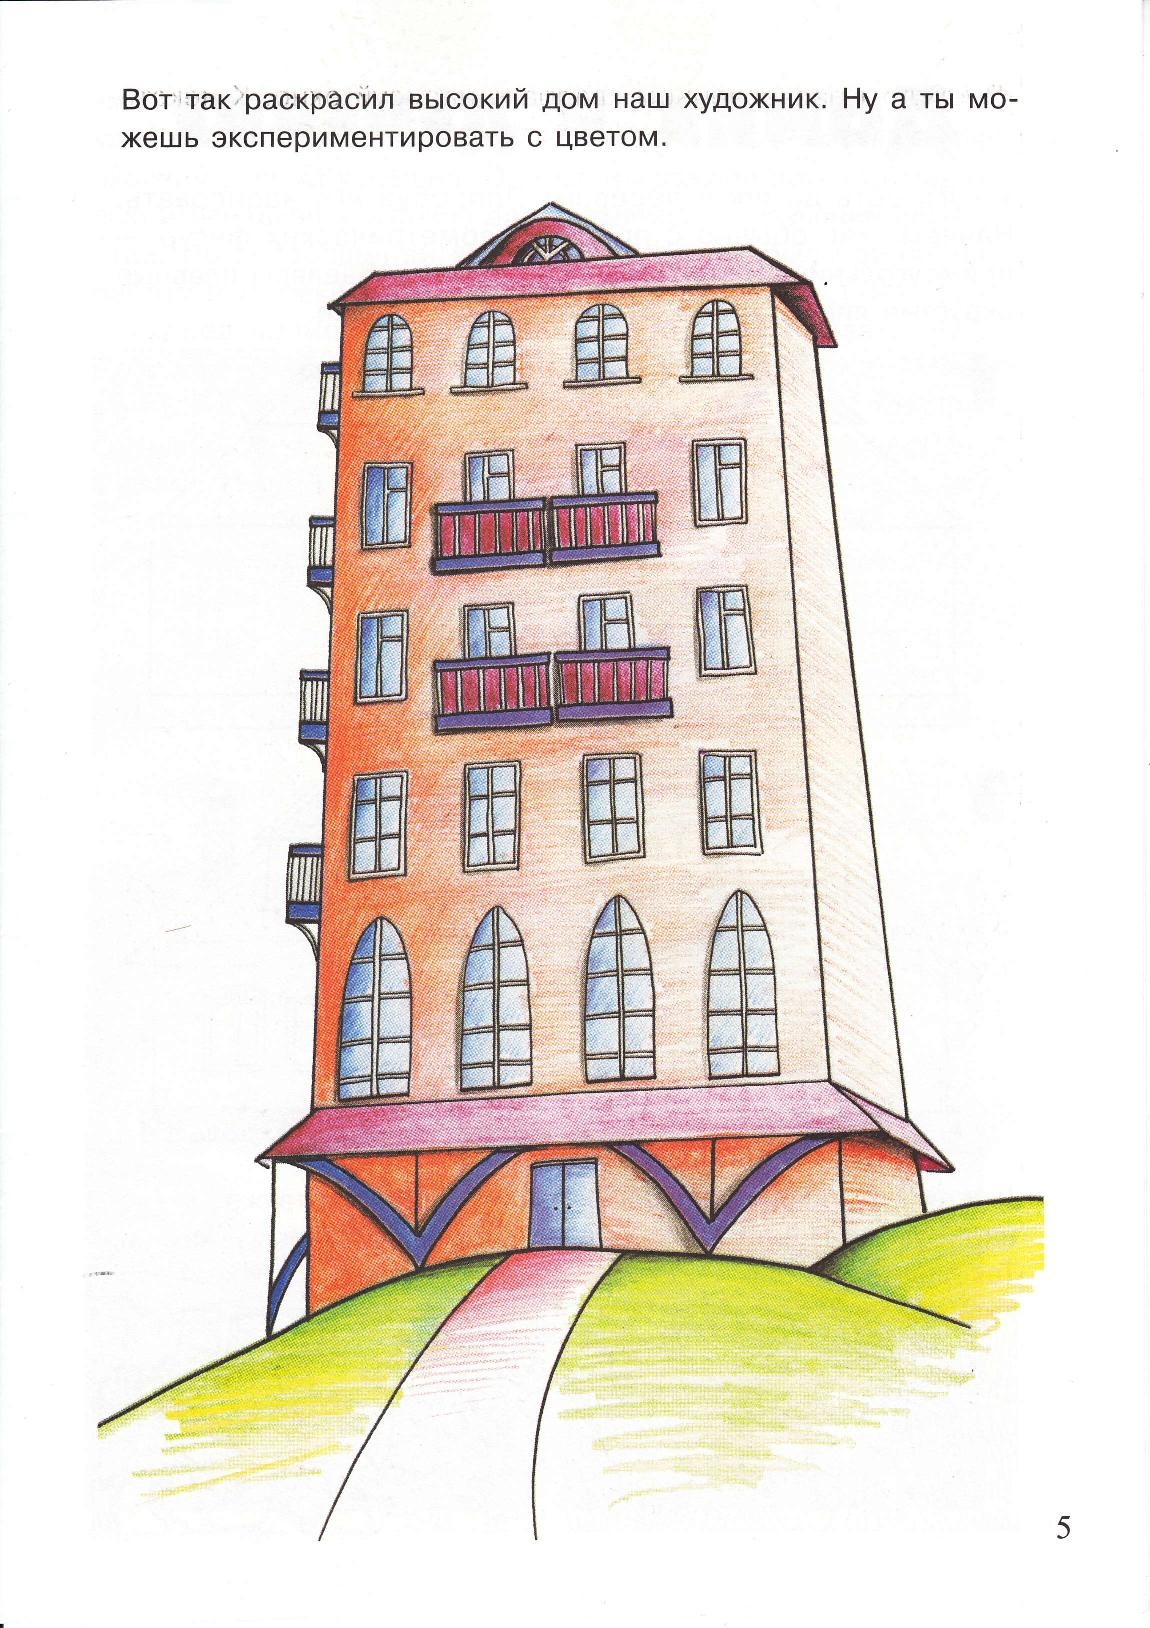 Рисунок многоэтажного дома для детей